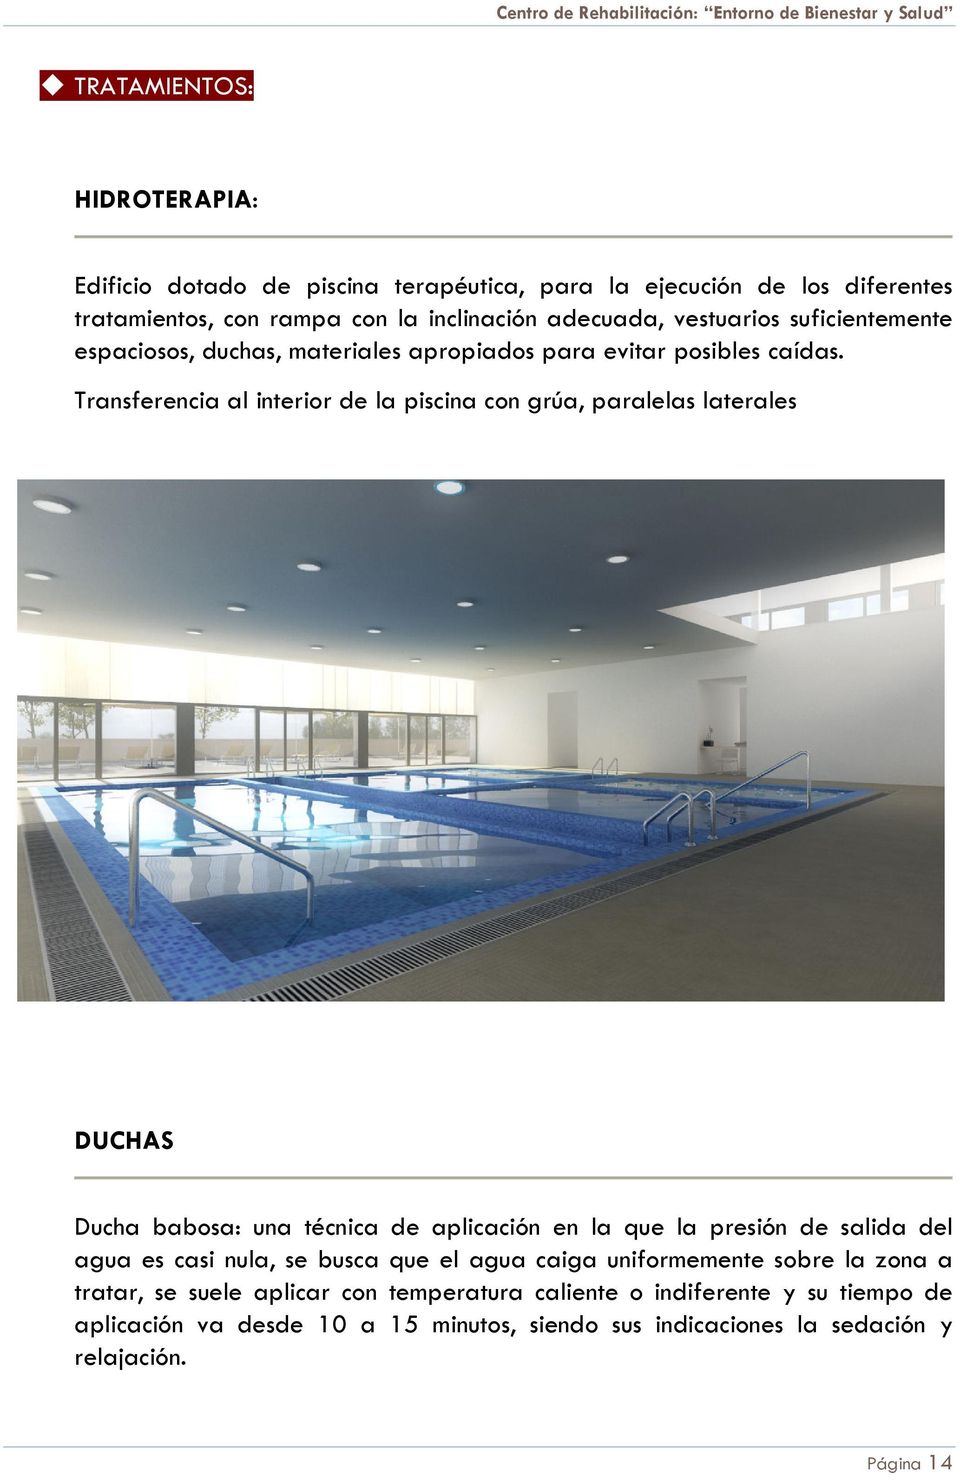 Centro De Rehabilitacion Entorno De Bienestar Y Salud Pdf Free Download